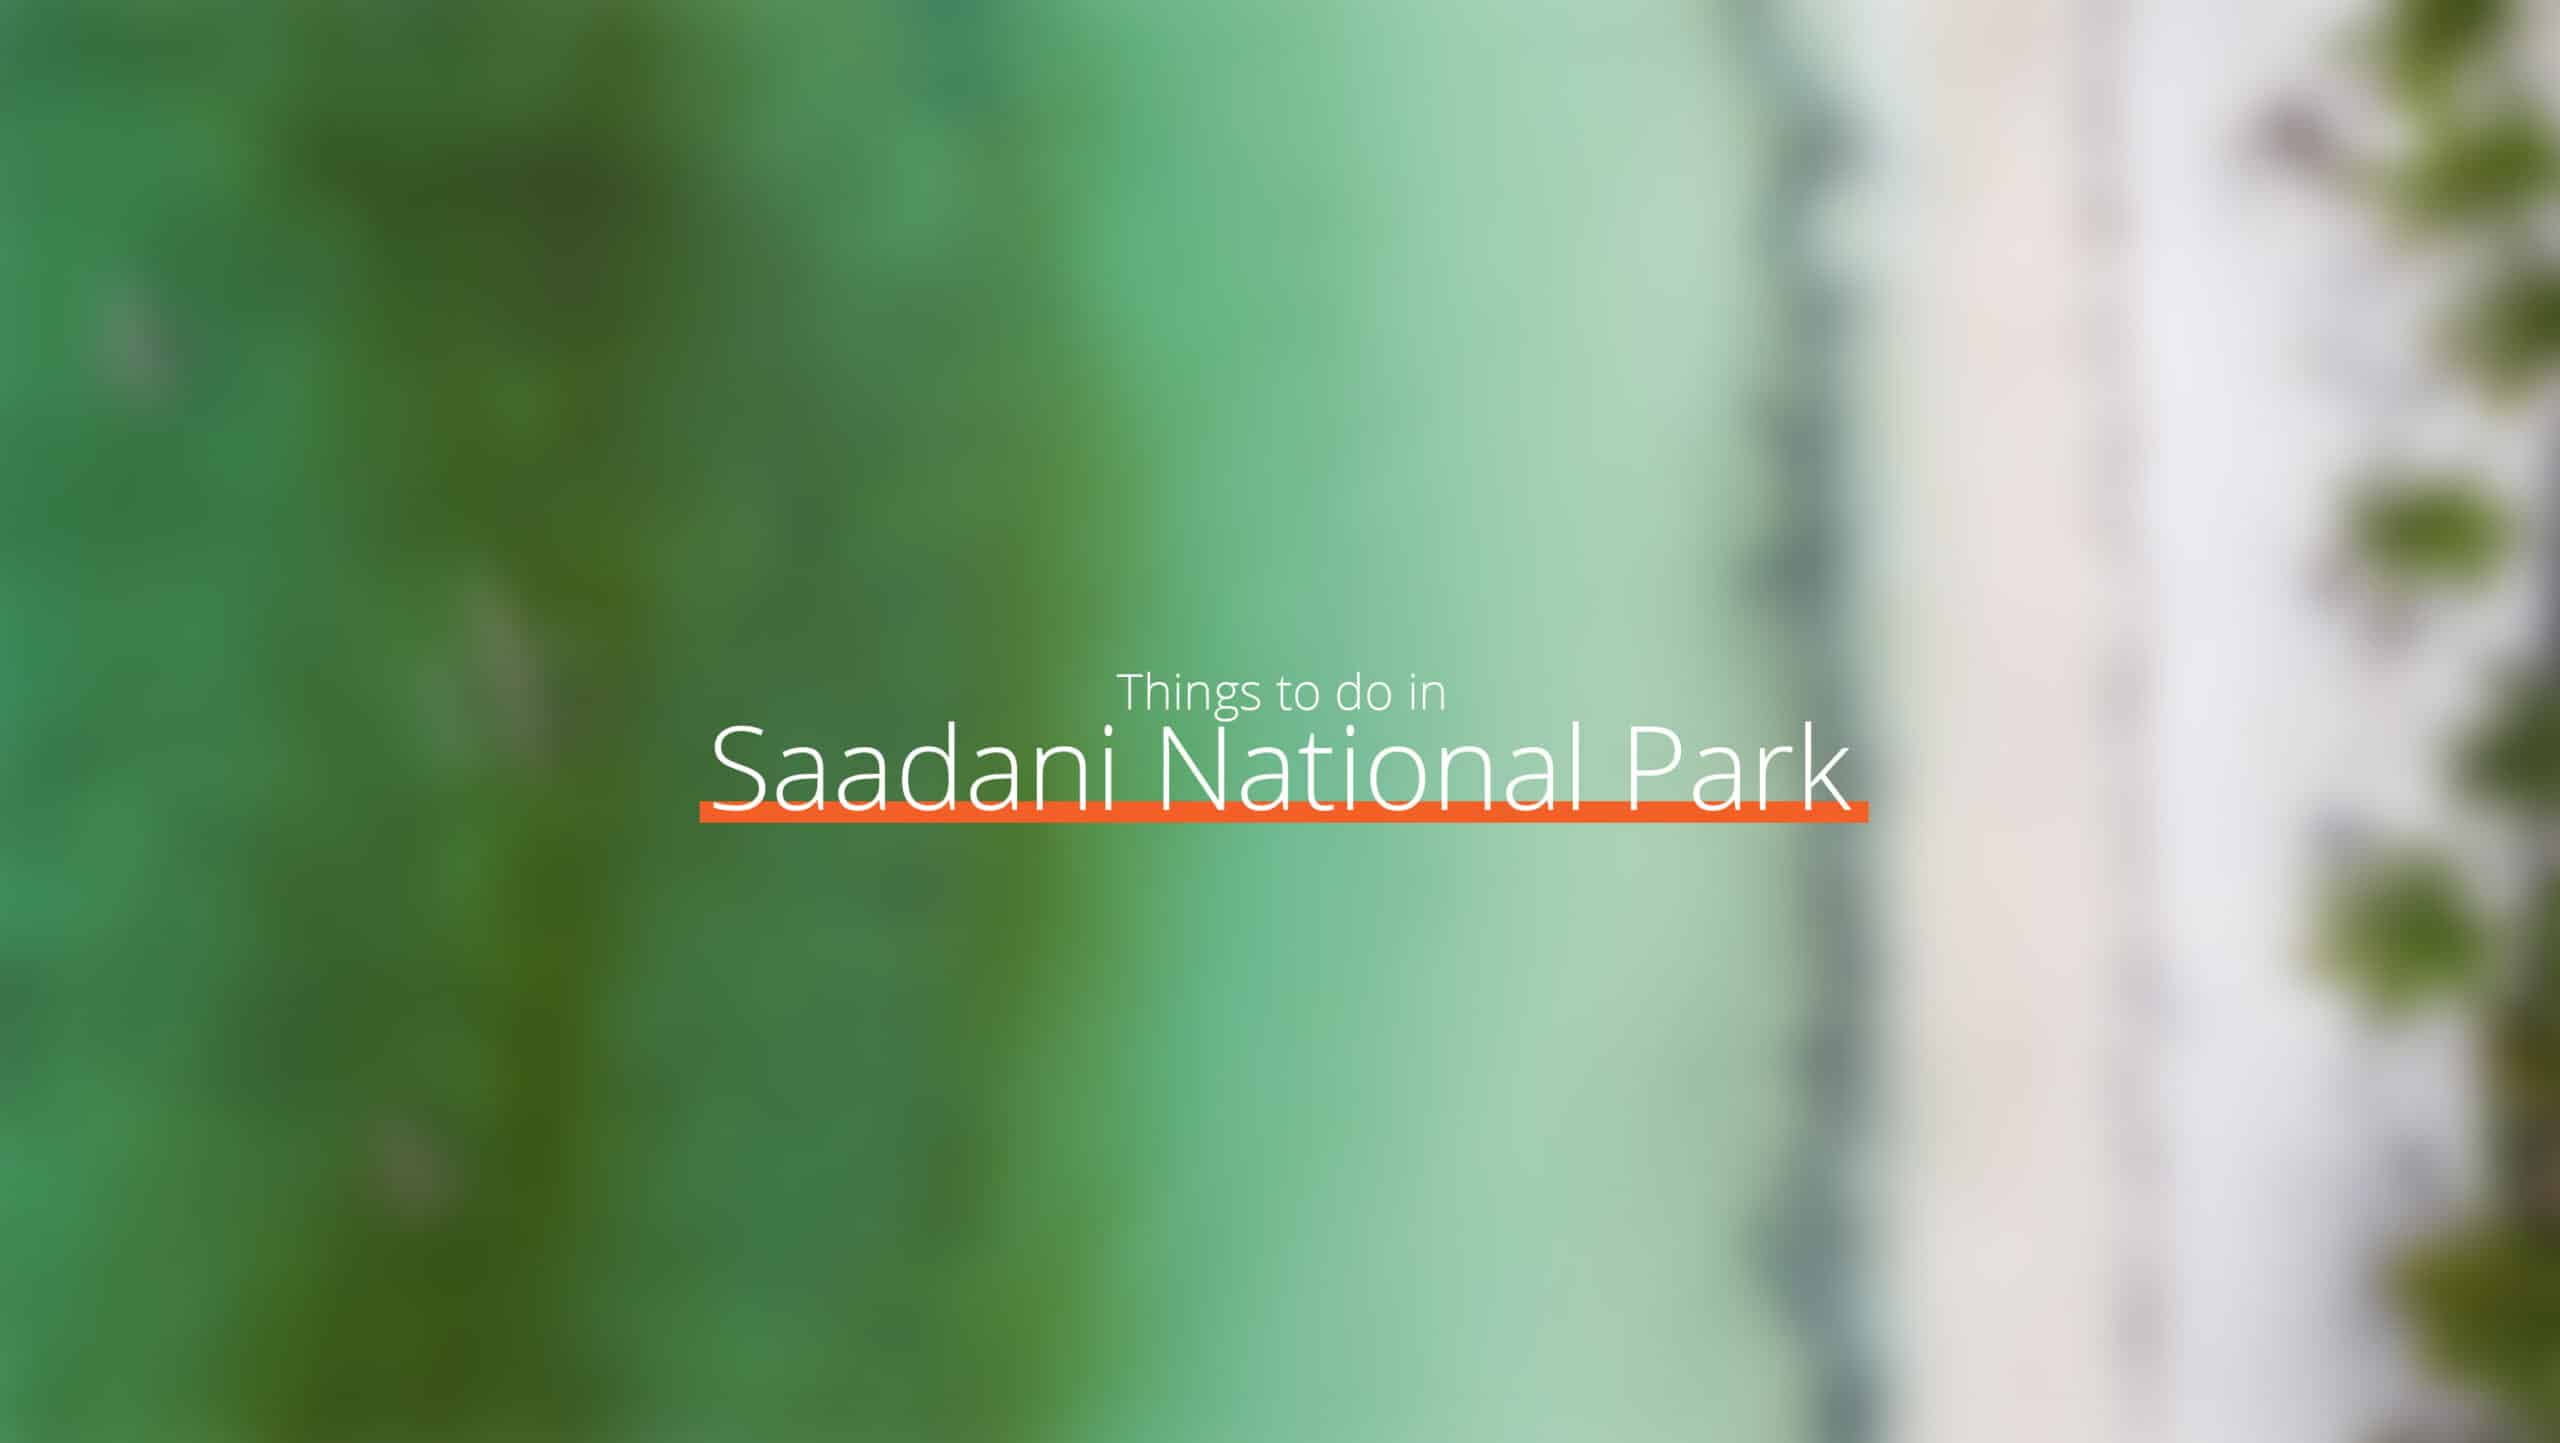 坦桑尼亚 - 萨达尼国家公园规模扩大 - 东部环线的去处